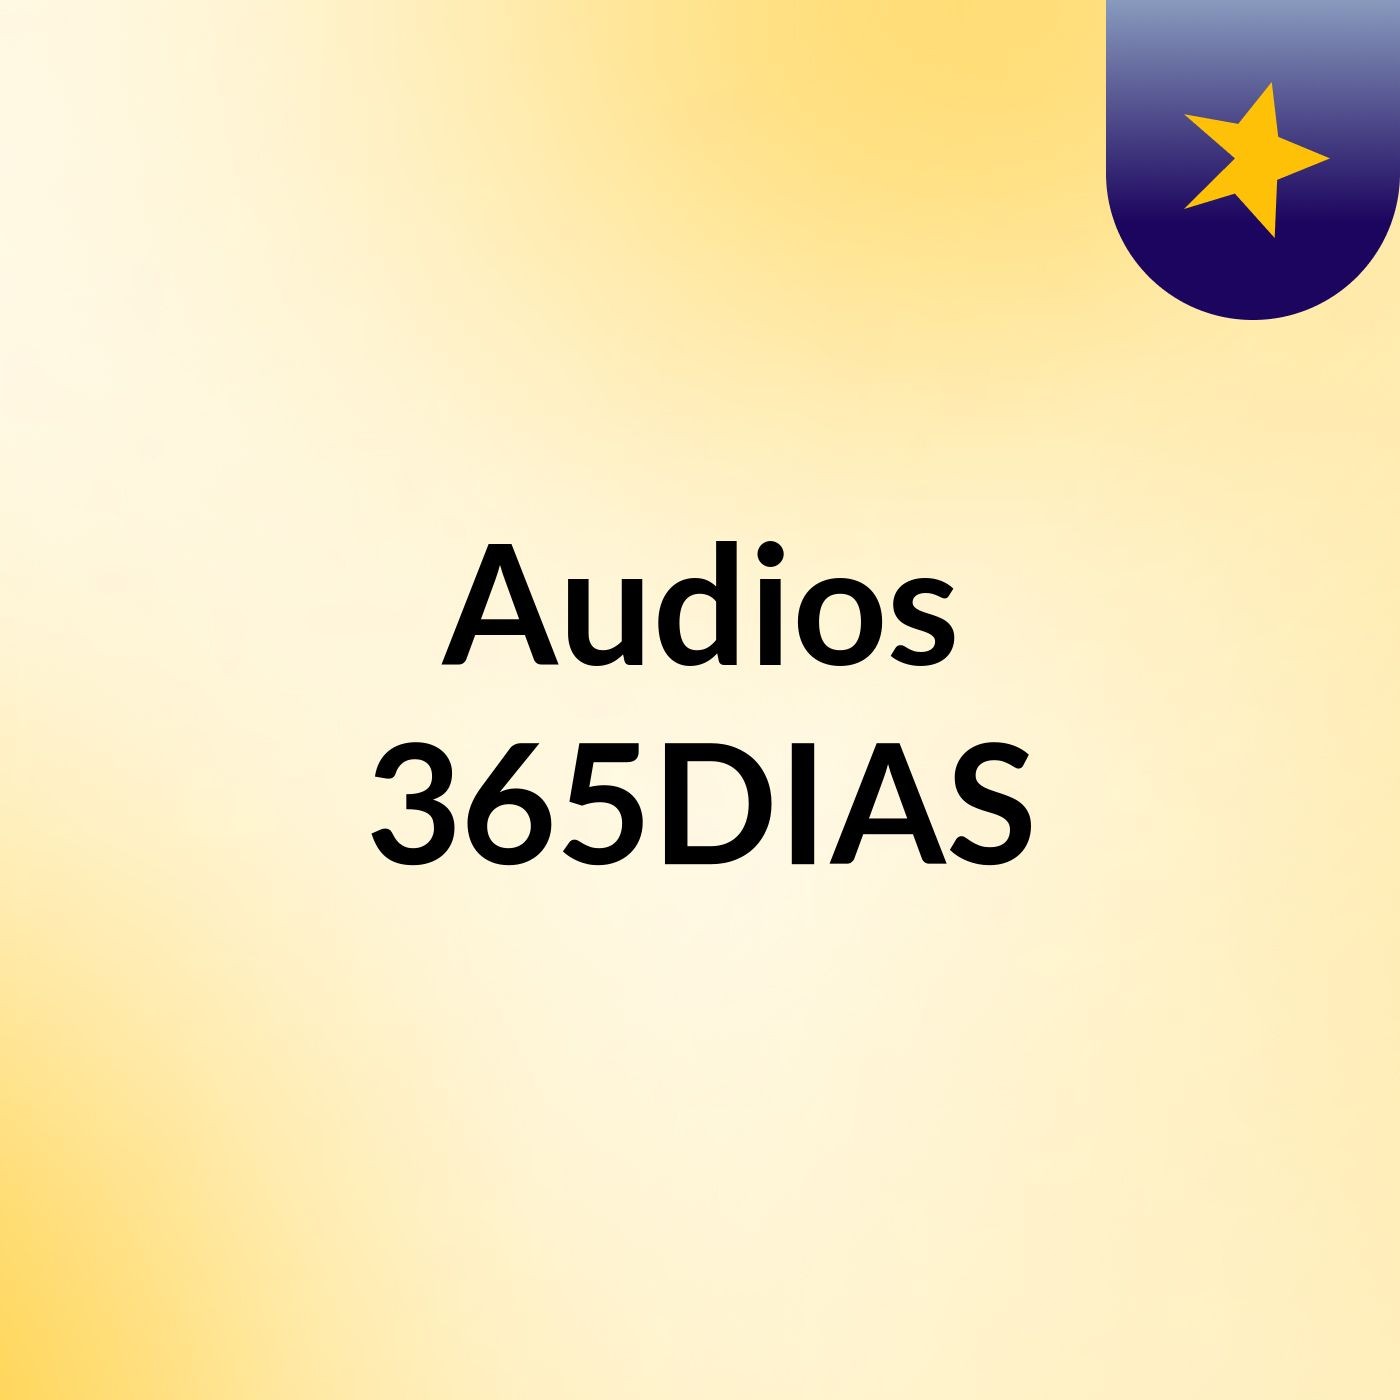 Audios 365DIAS